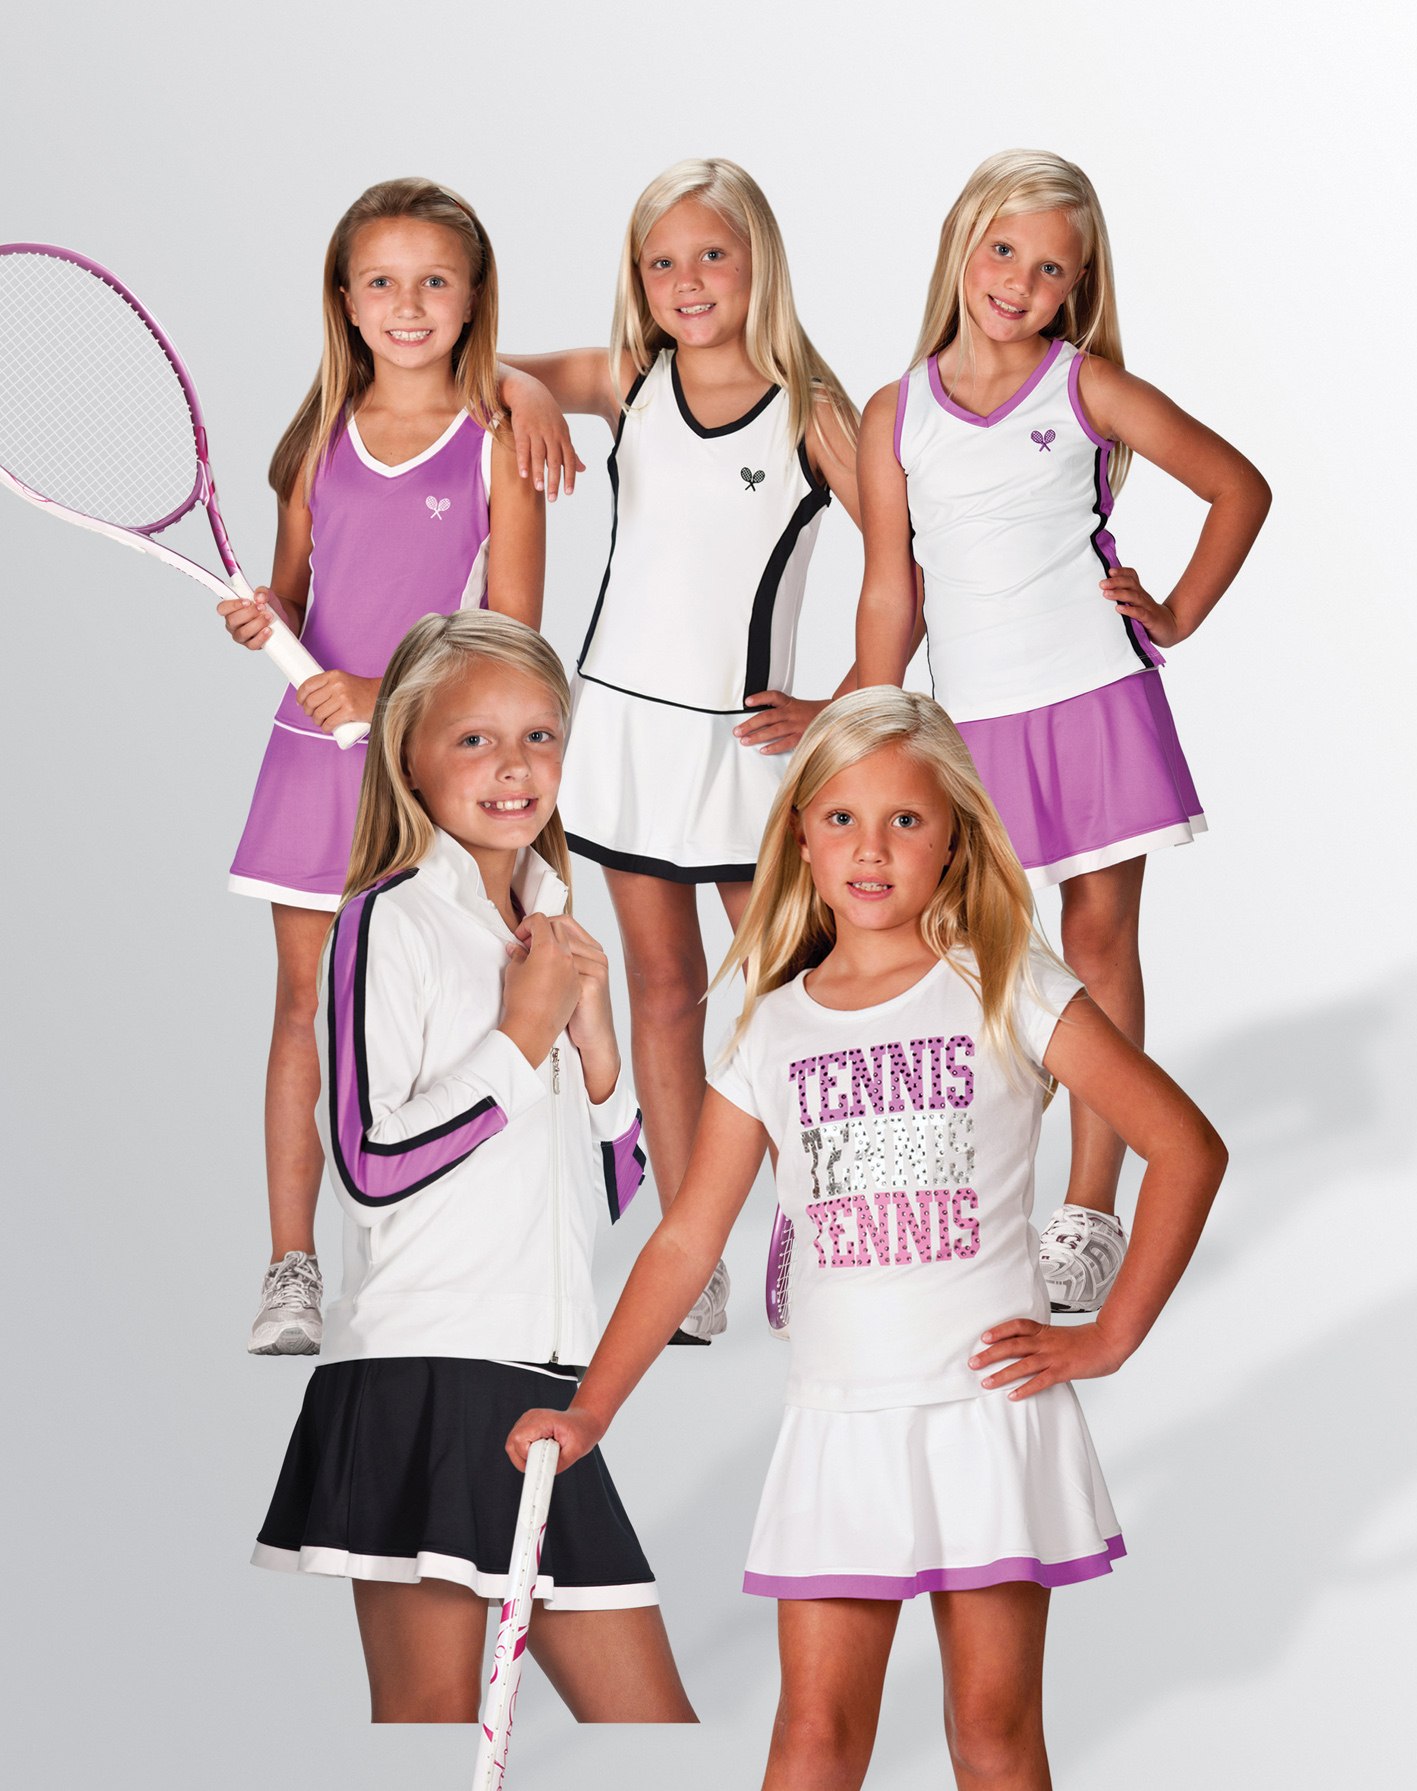 Большие девочки выпуск 4.04. Спортивная форма для девочек. Одежда для большого тенниса для детей. Одежда для большого тенниса для девочек. Форма для большого тенниса для девочек.